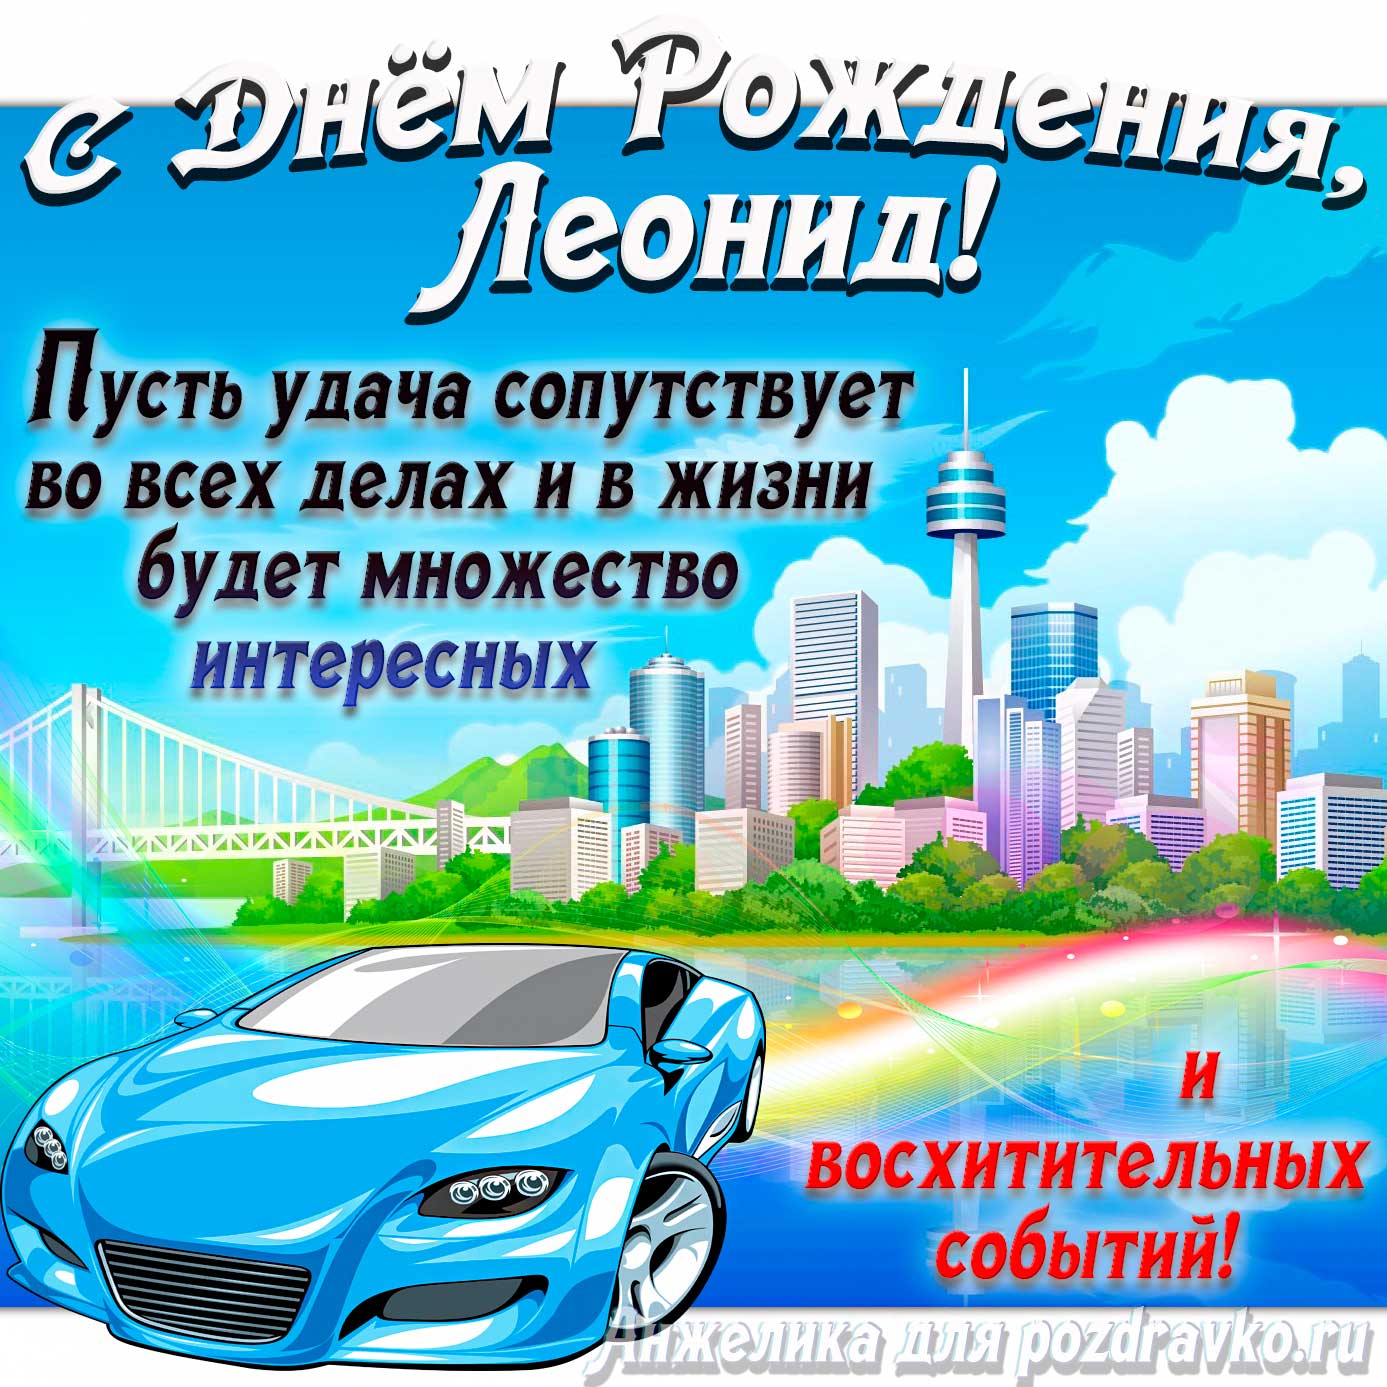 Открытка - с Днём Рождения Леонид с голубой машиной и пожеланием. Скачать бесплатно или отправить картинку.